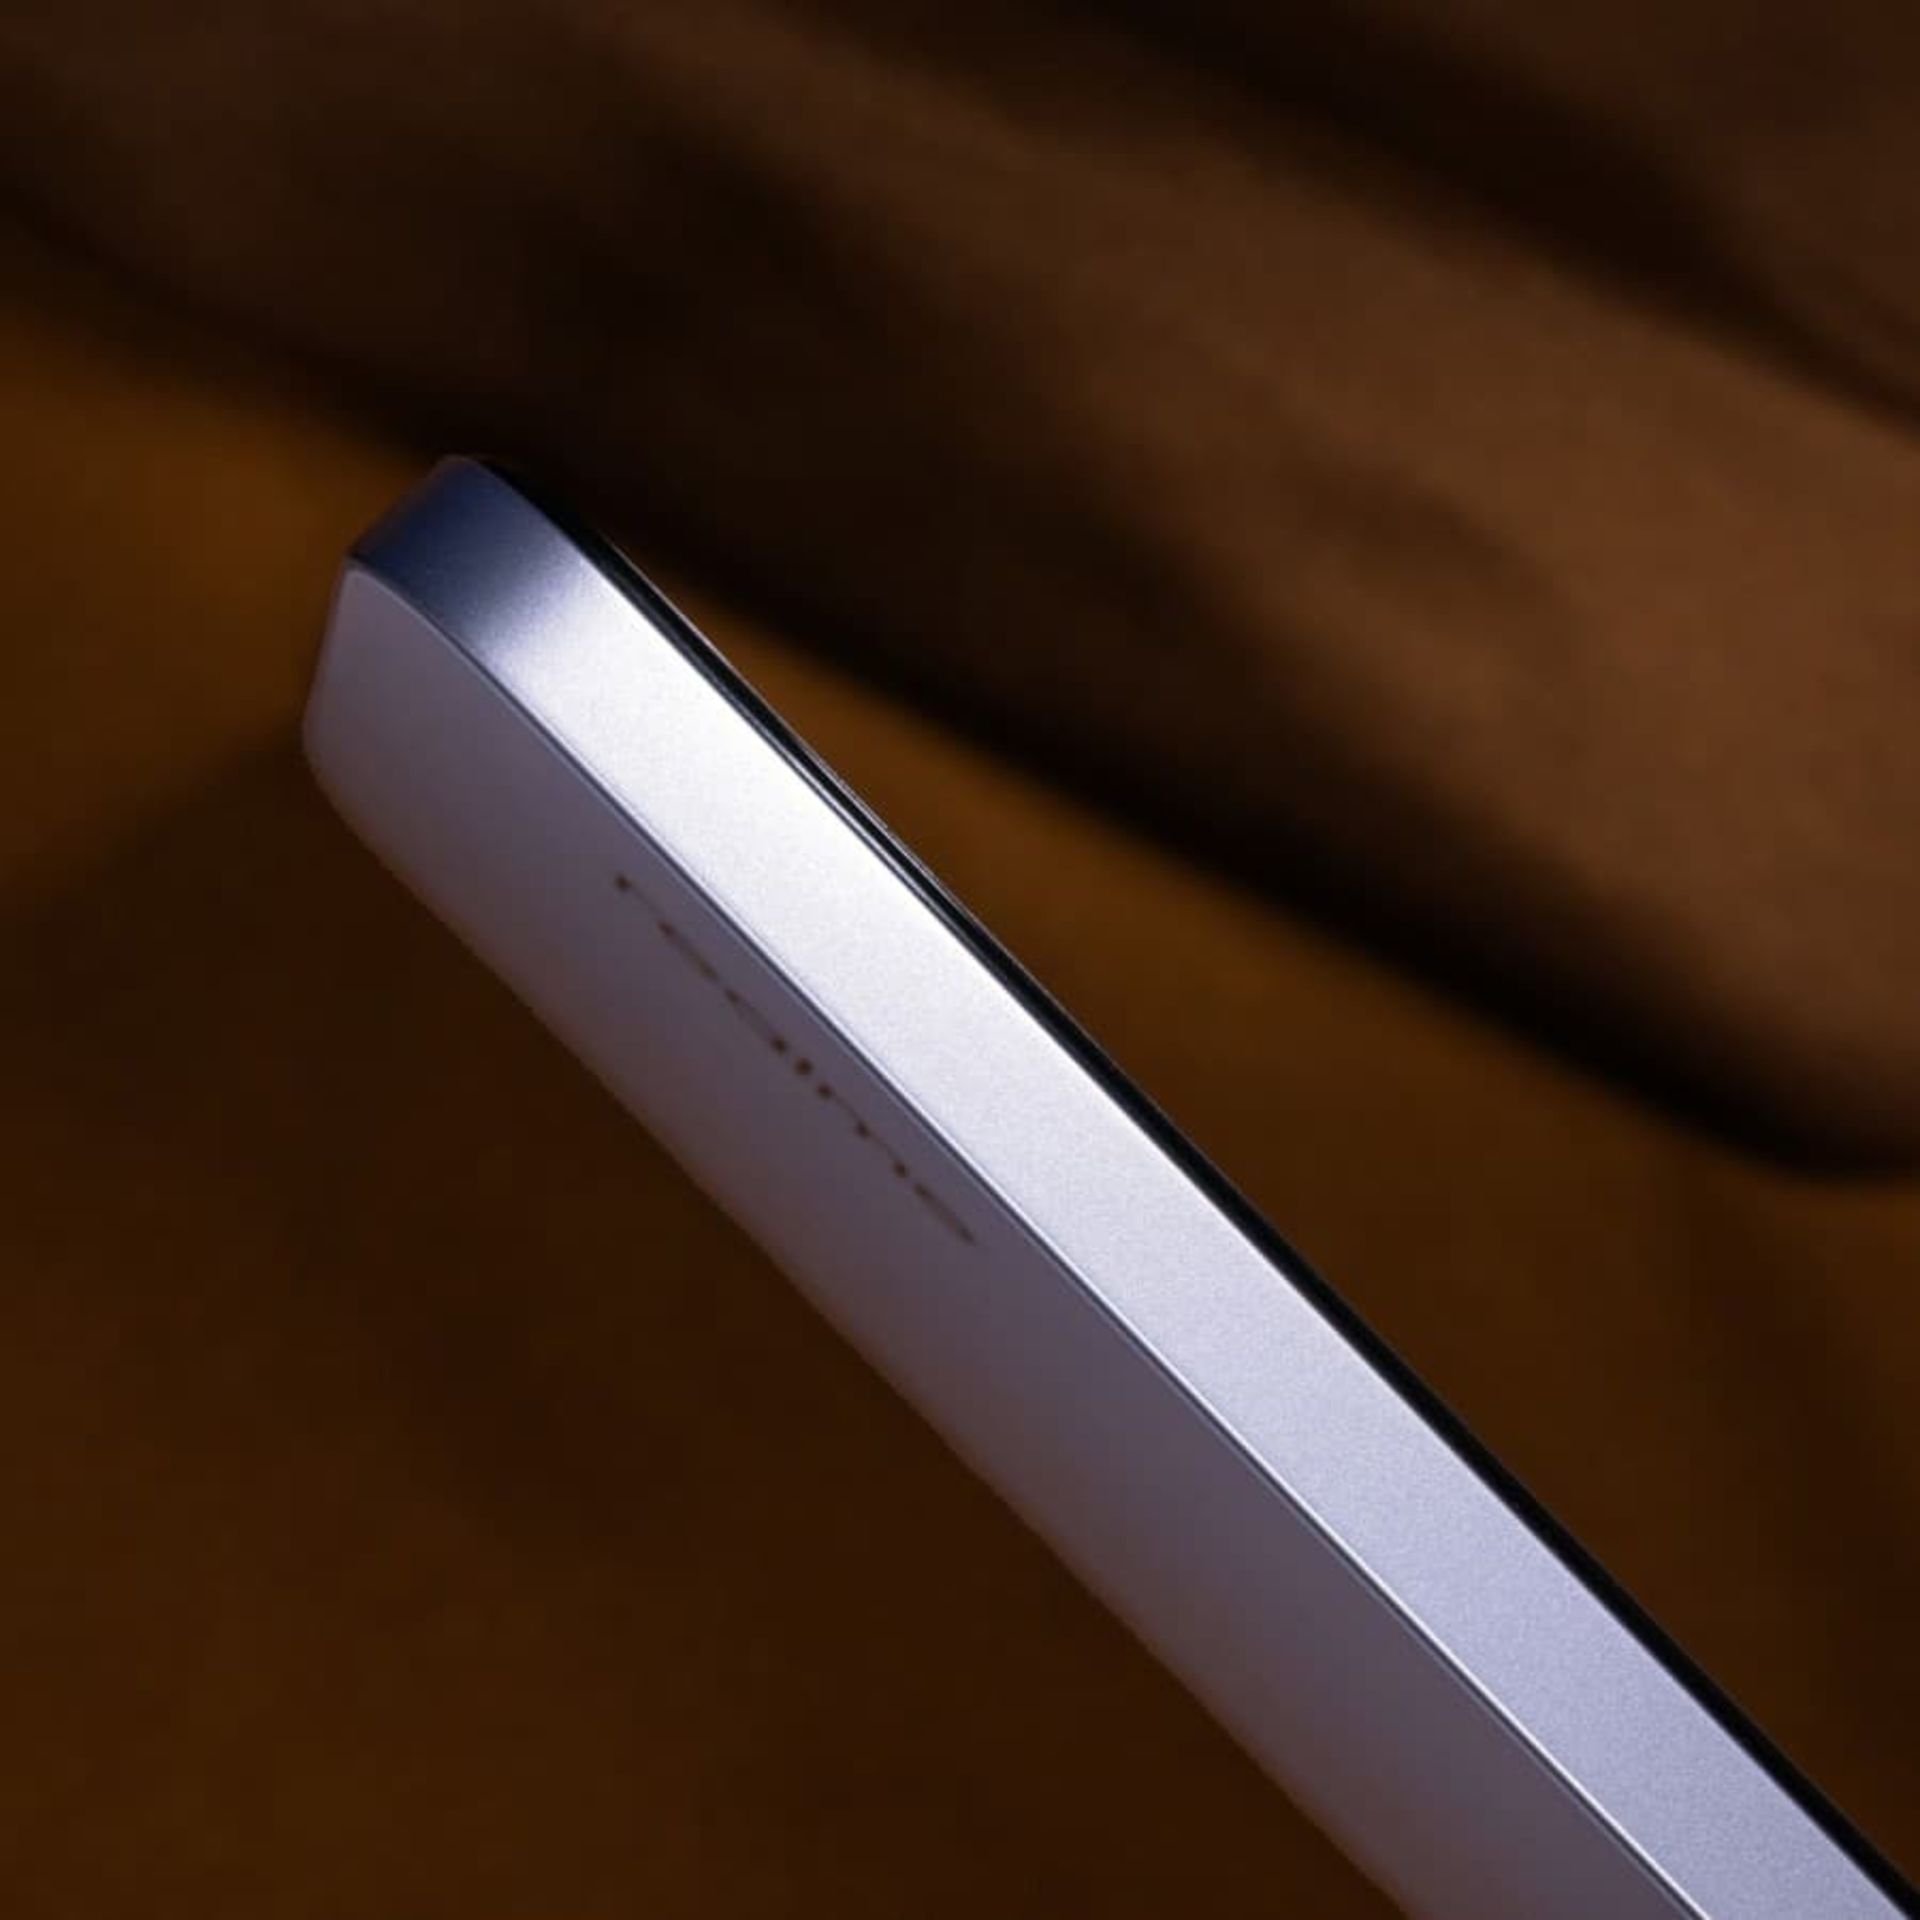 نمایی از فریم گوشی Realme C65 به رنگ بنفش کم رنگ